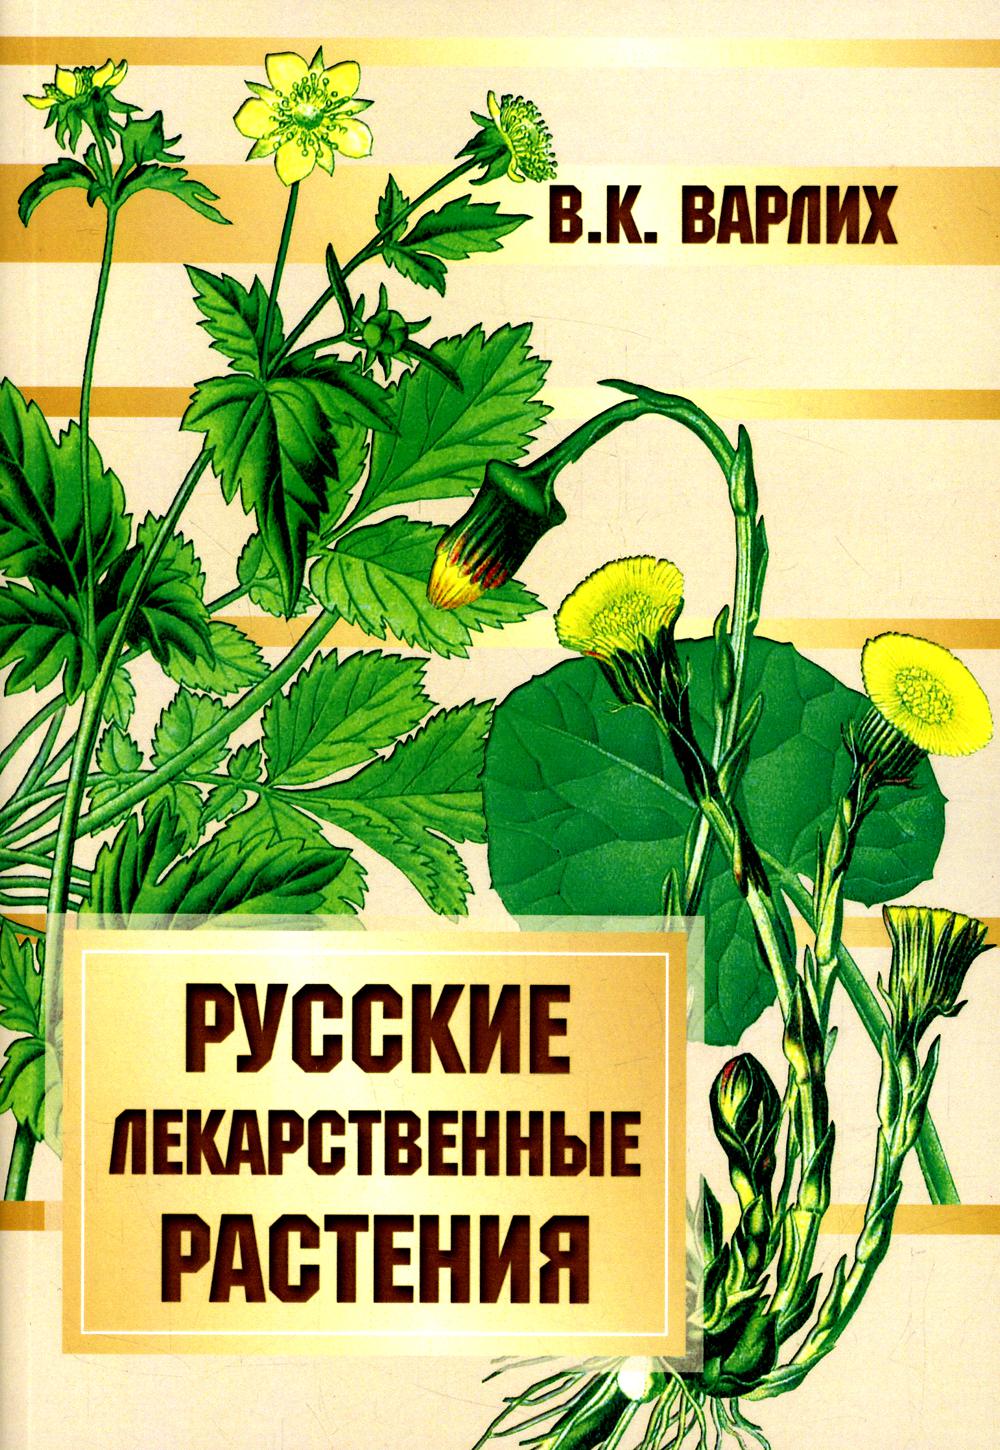 фото Книга русские лекарственные растения амрита